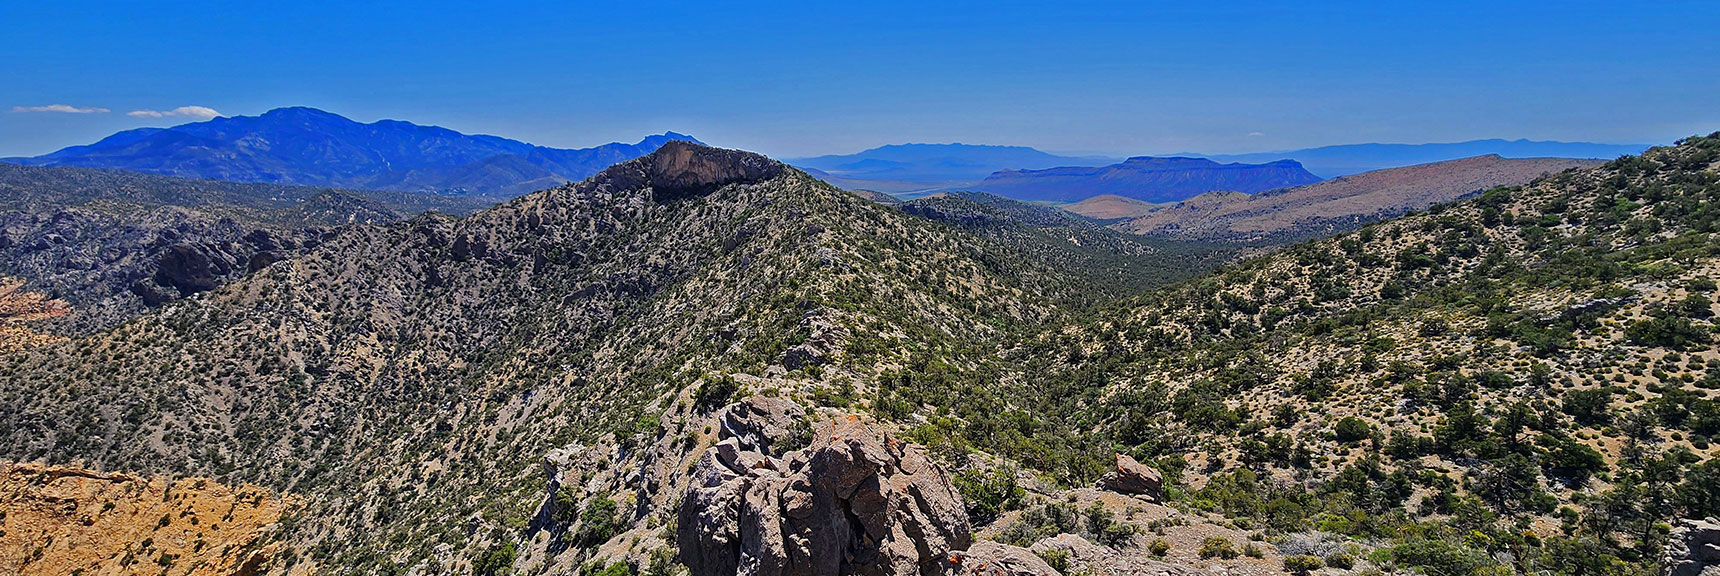 Next Stretch of Ridgeline South from Indecision Peak | Mt Wilson to Hidden Peak | Upper Crest Ridgeline | Rainbow Mountain Wilderness, Nevada